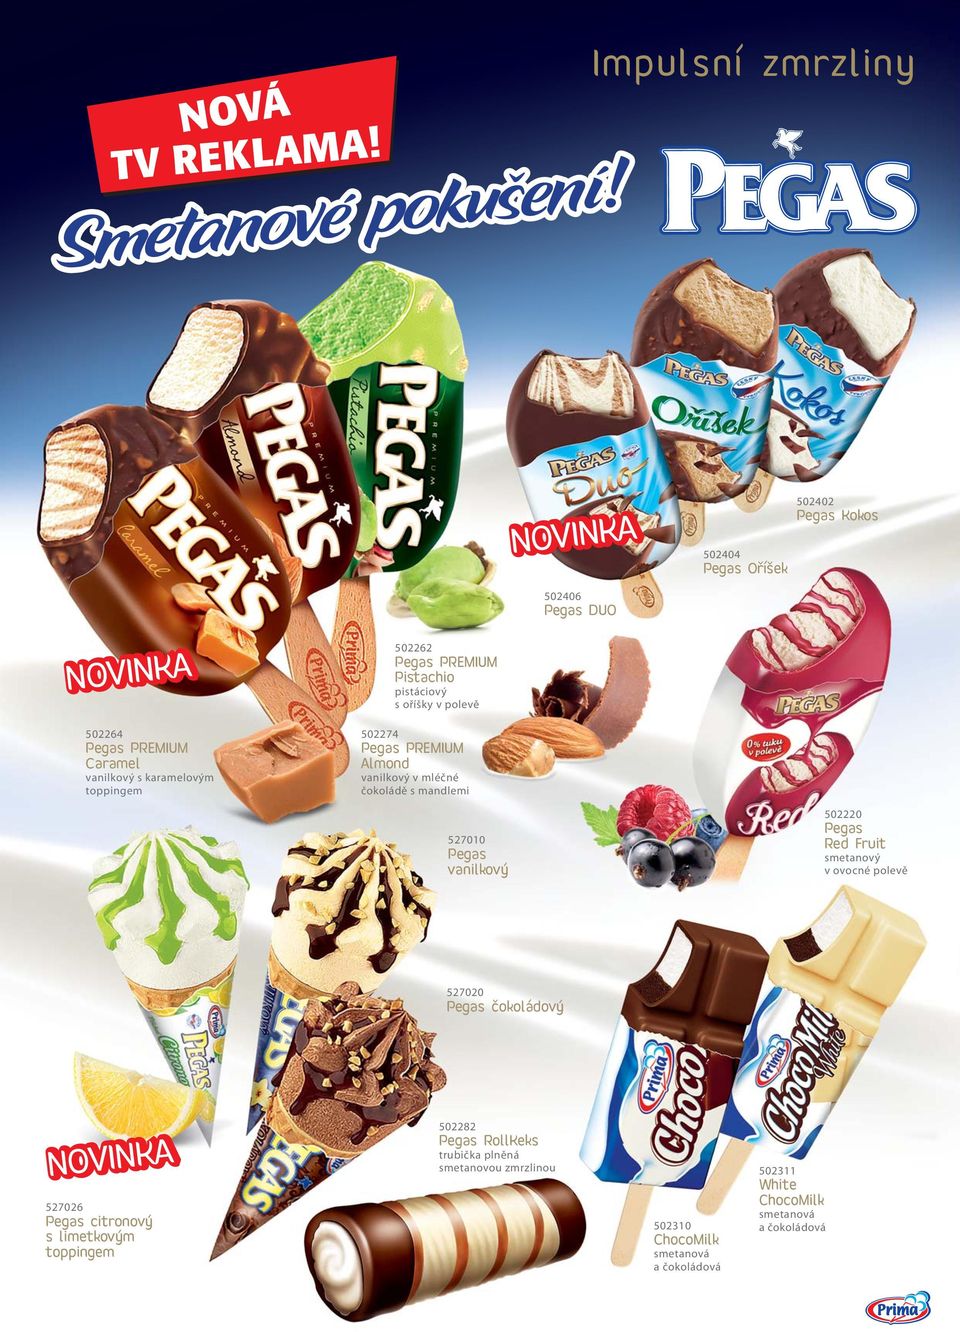 Pegas PREMIUM Pistachio pistáciový s oříšky v polevě 502274 Pegas PREMIUM Almond vanilkový v mléčné čokoládě s mandlemi 527010 Pegas vanilkový